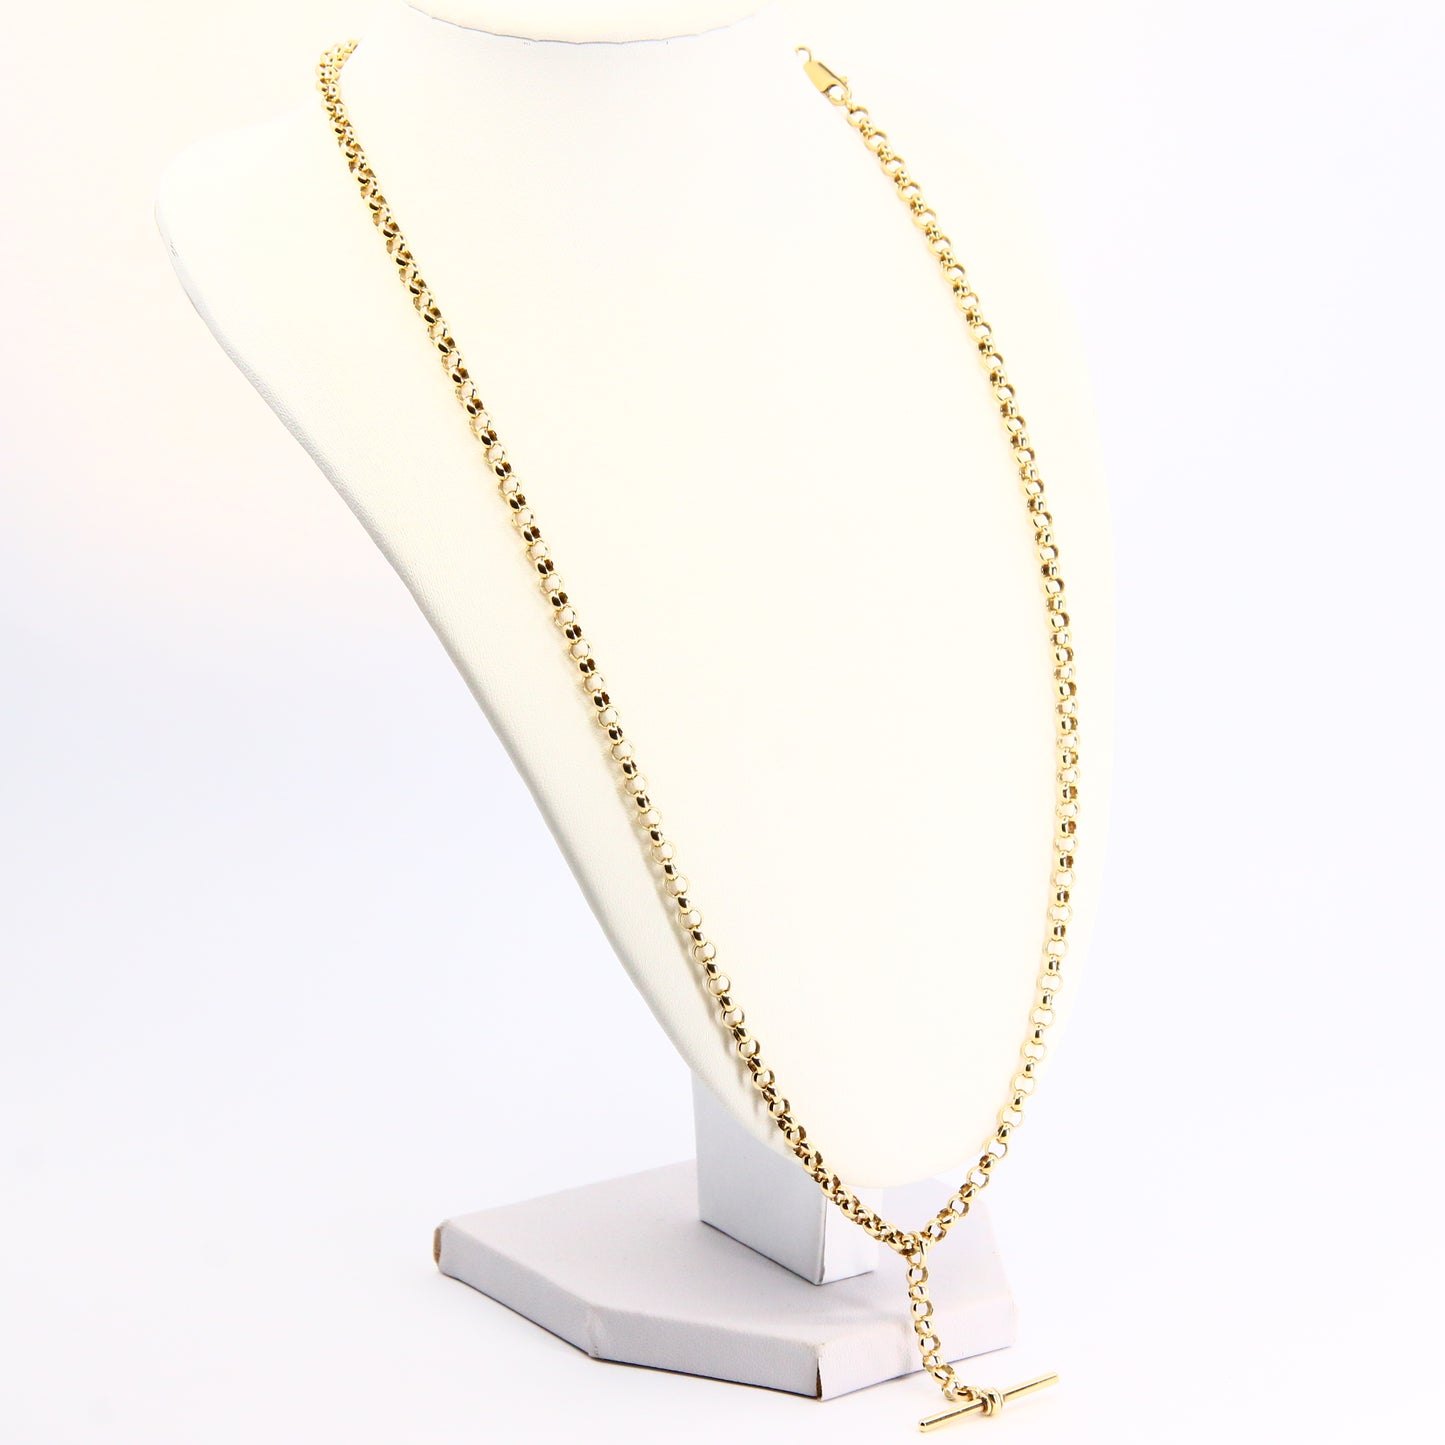 Vintage 9ct Slider T Bar Belcher Chain Necklace Yellow Gold Necklace Hallmarked